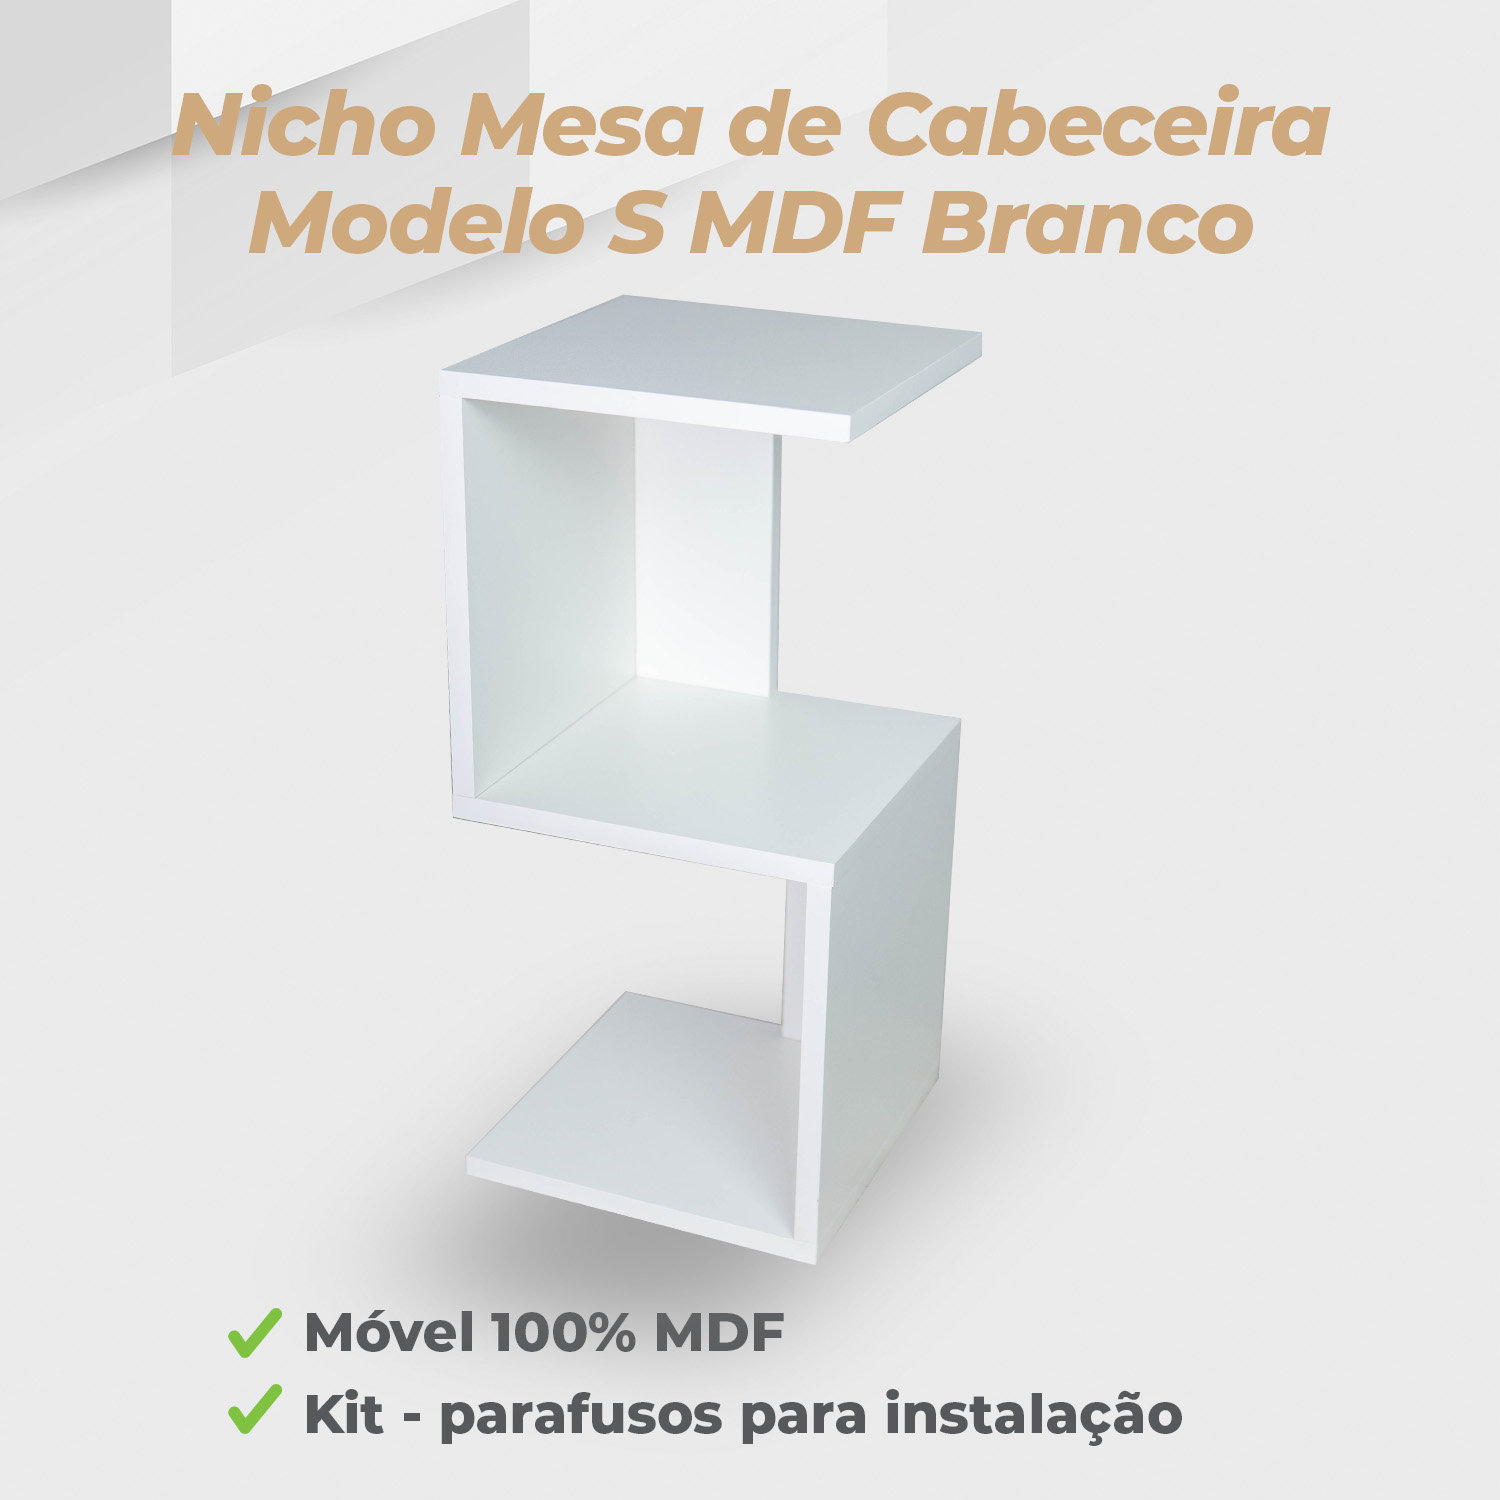 Nicho Mesa De Cabeceira Modelo S MDF Branco